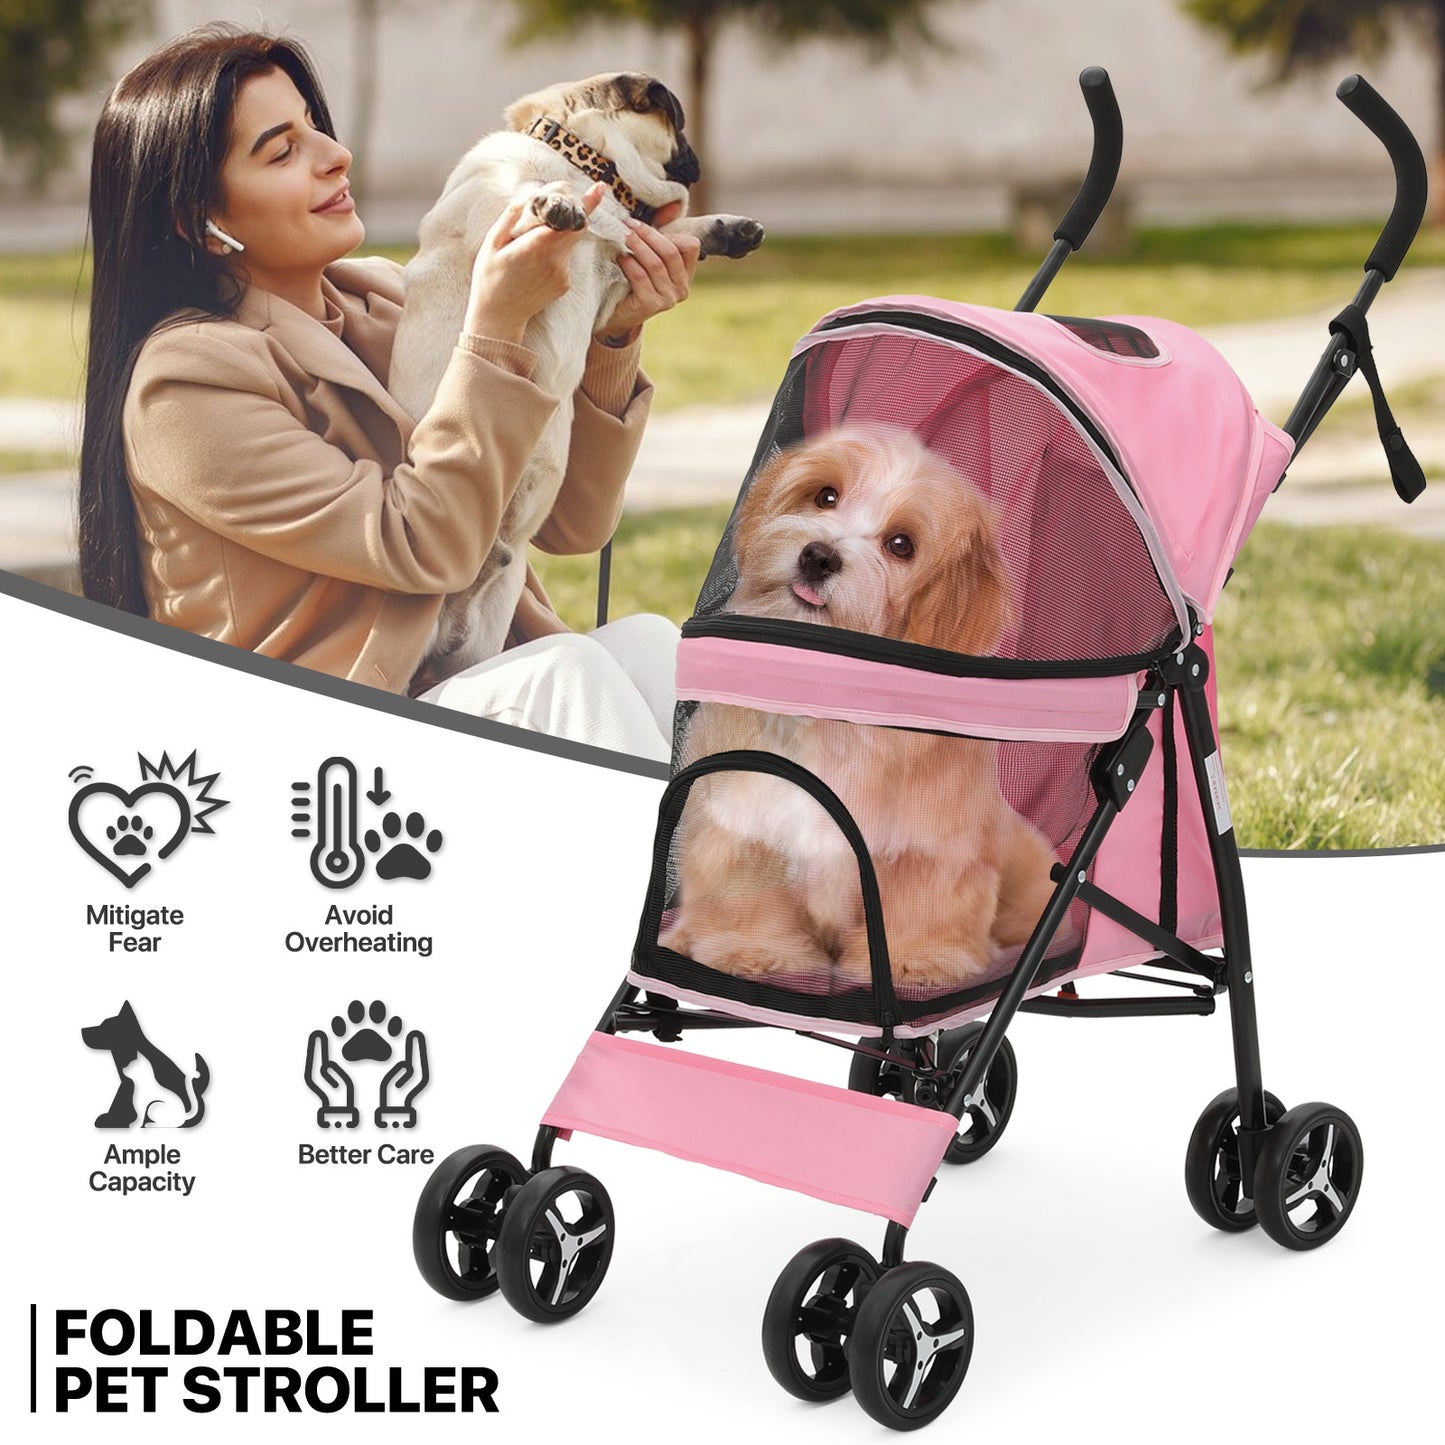 4 Wheels Pet Stroller - 26*18*37.5 inch